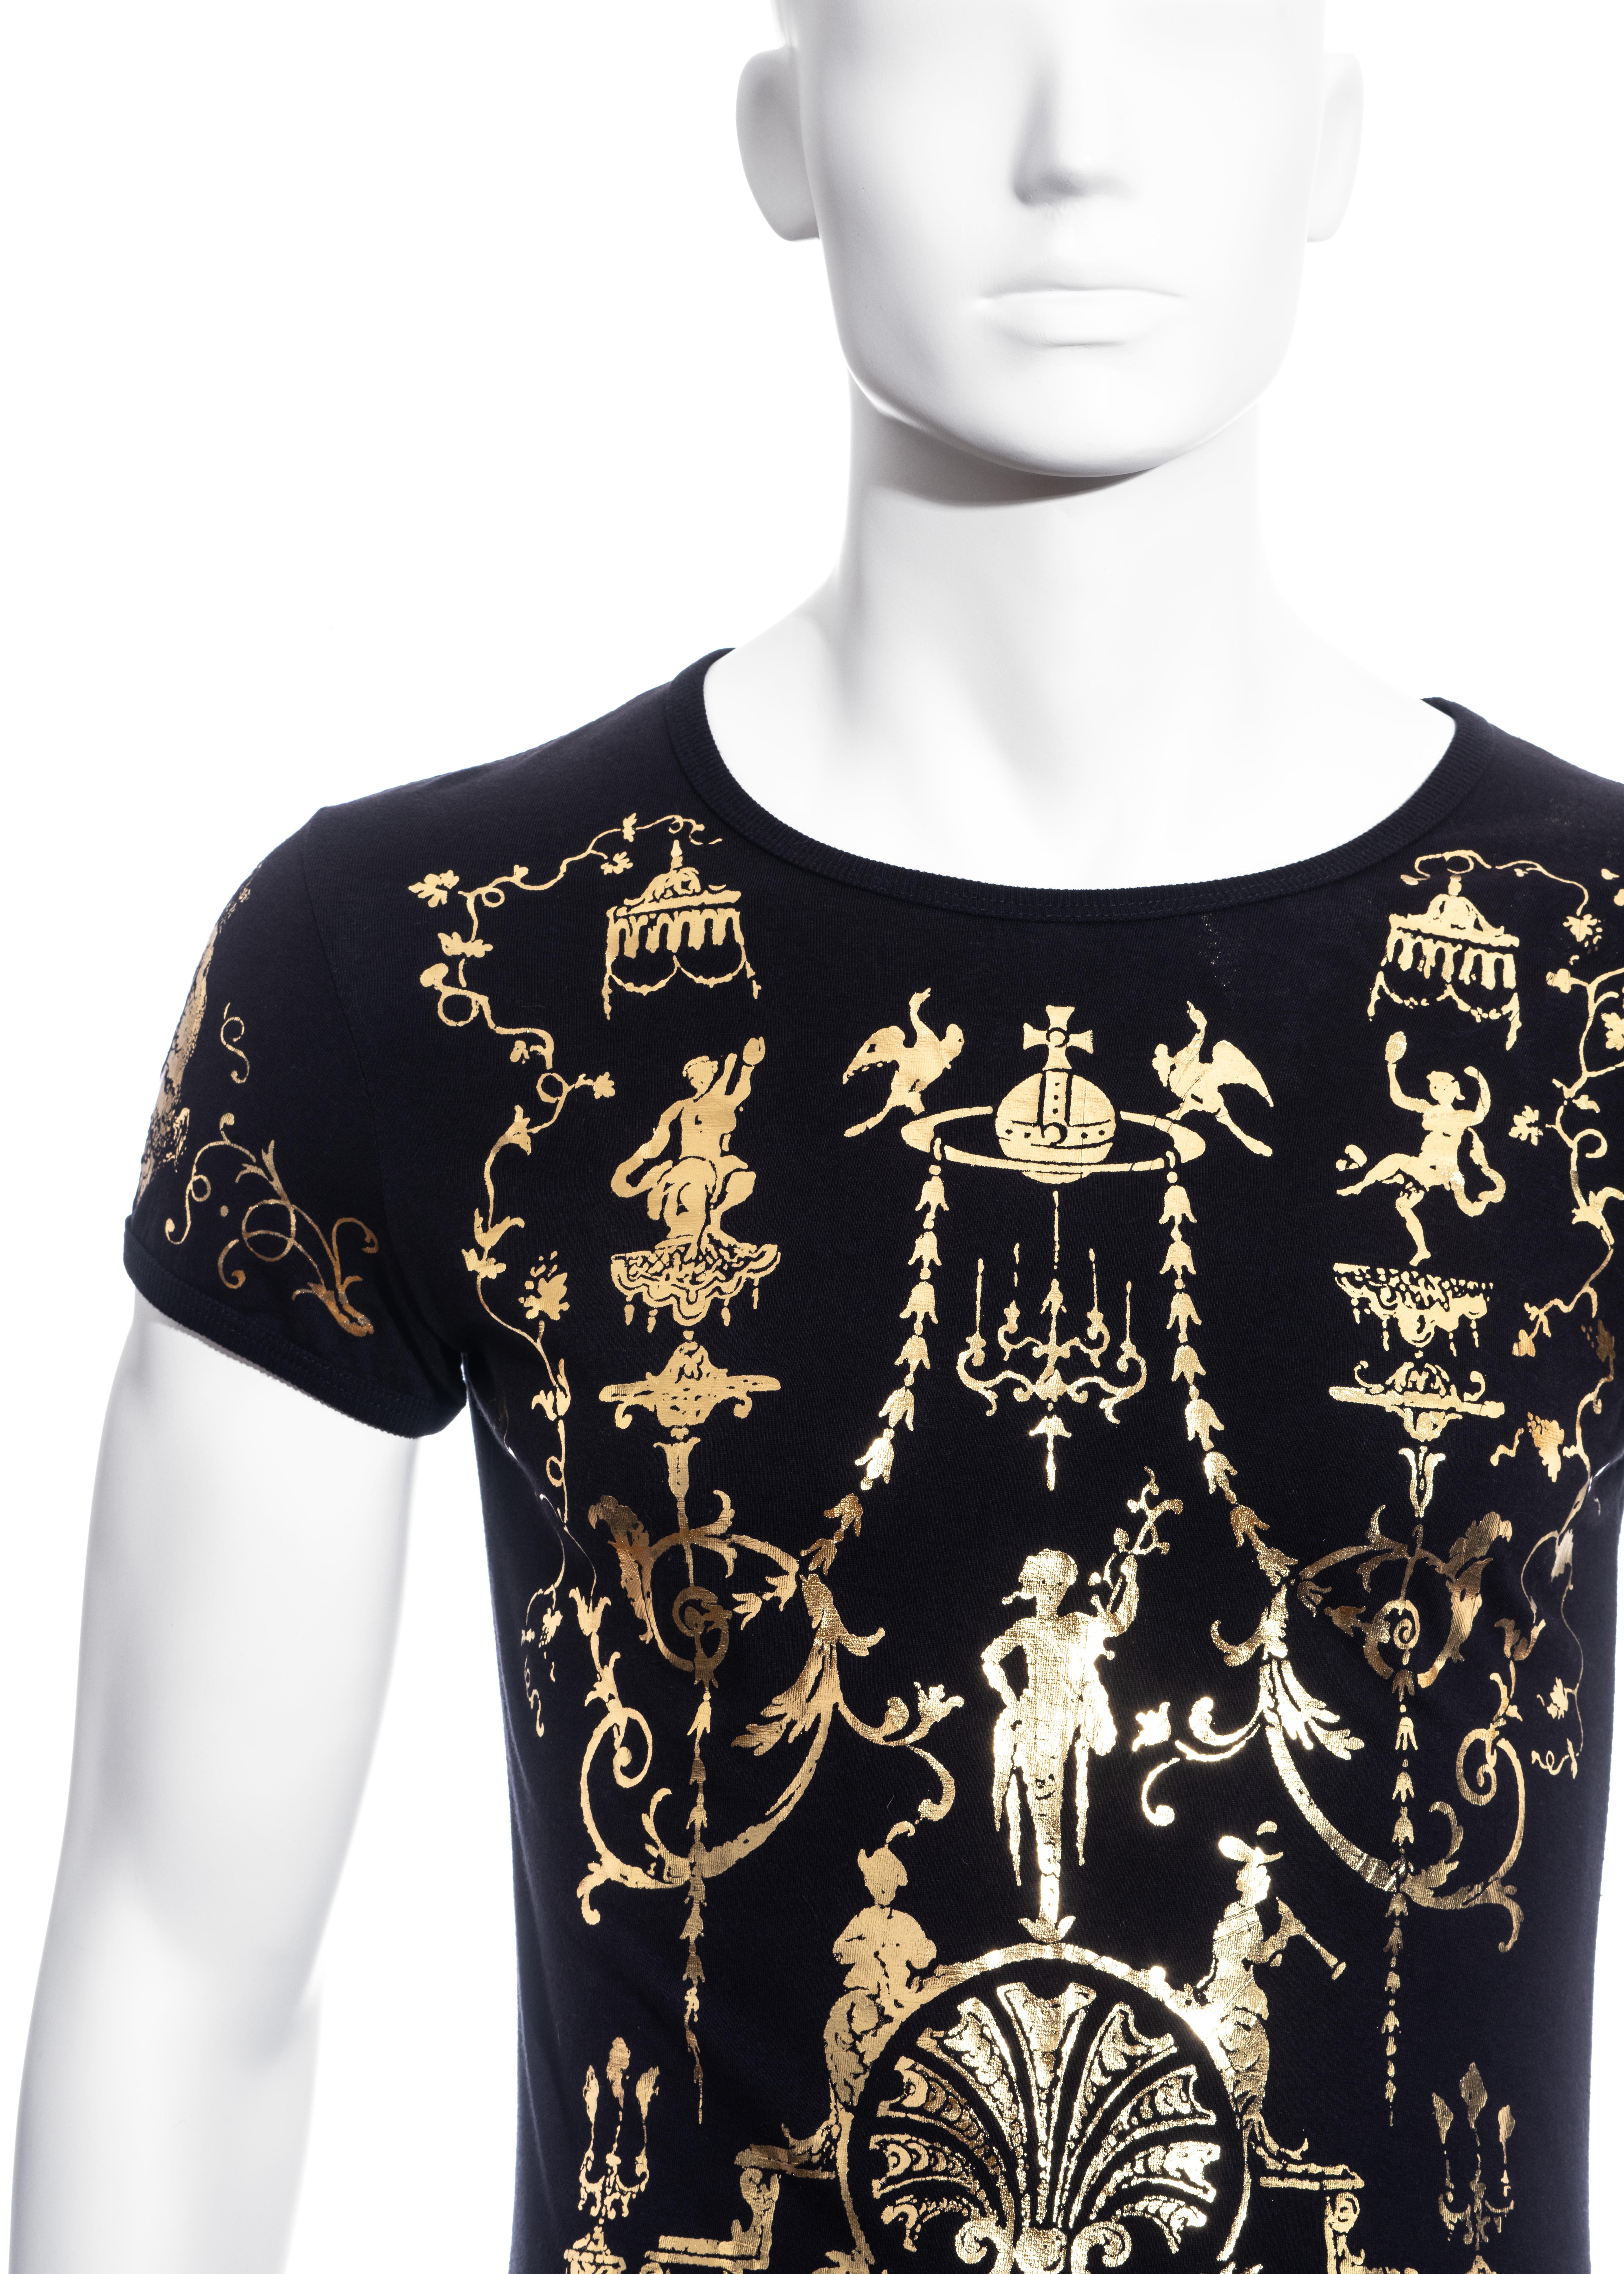 Black Men's Vivienne Westwood black cotton t-shirt with metallic gold print, fw 1990 For Sale